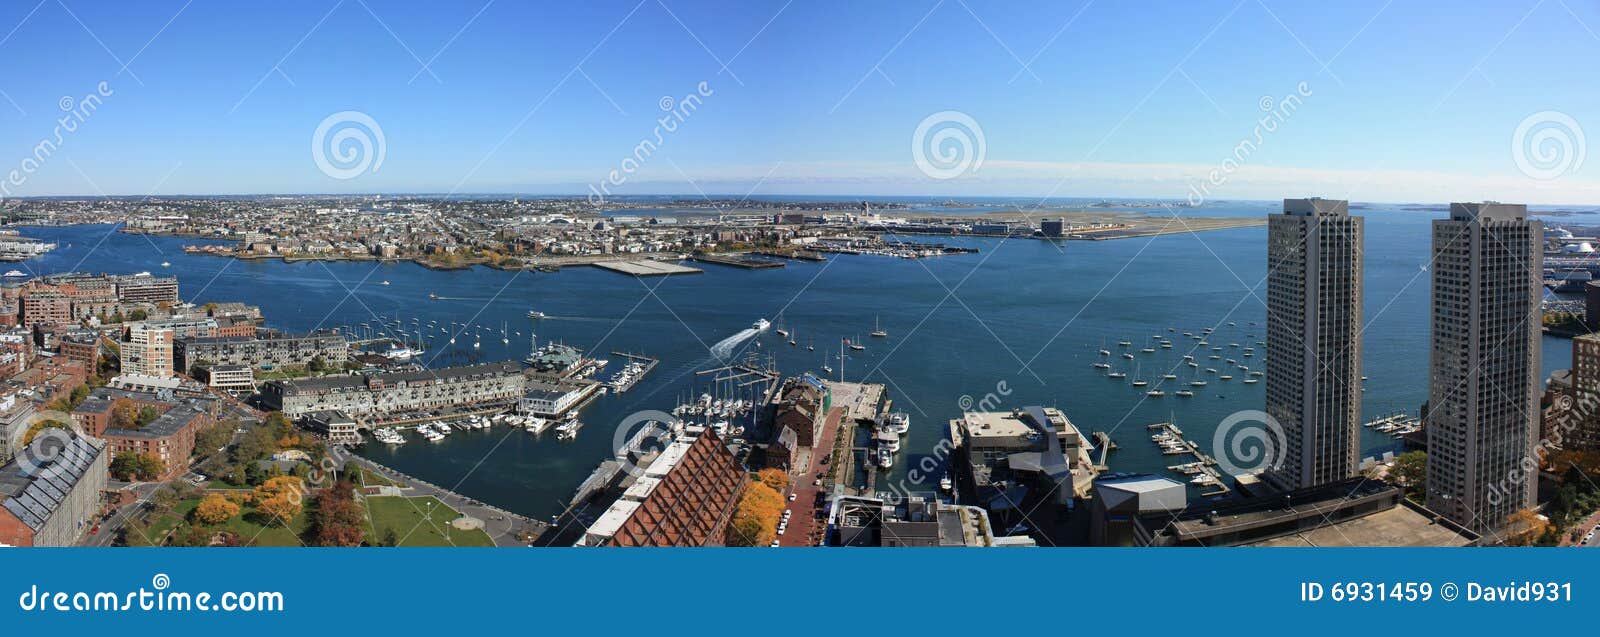 boston harbor skyline panorama